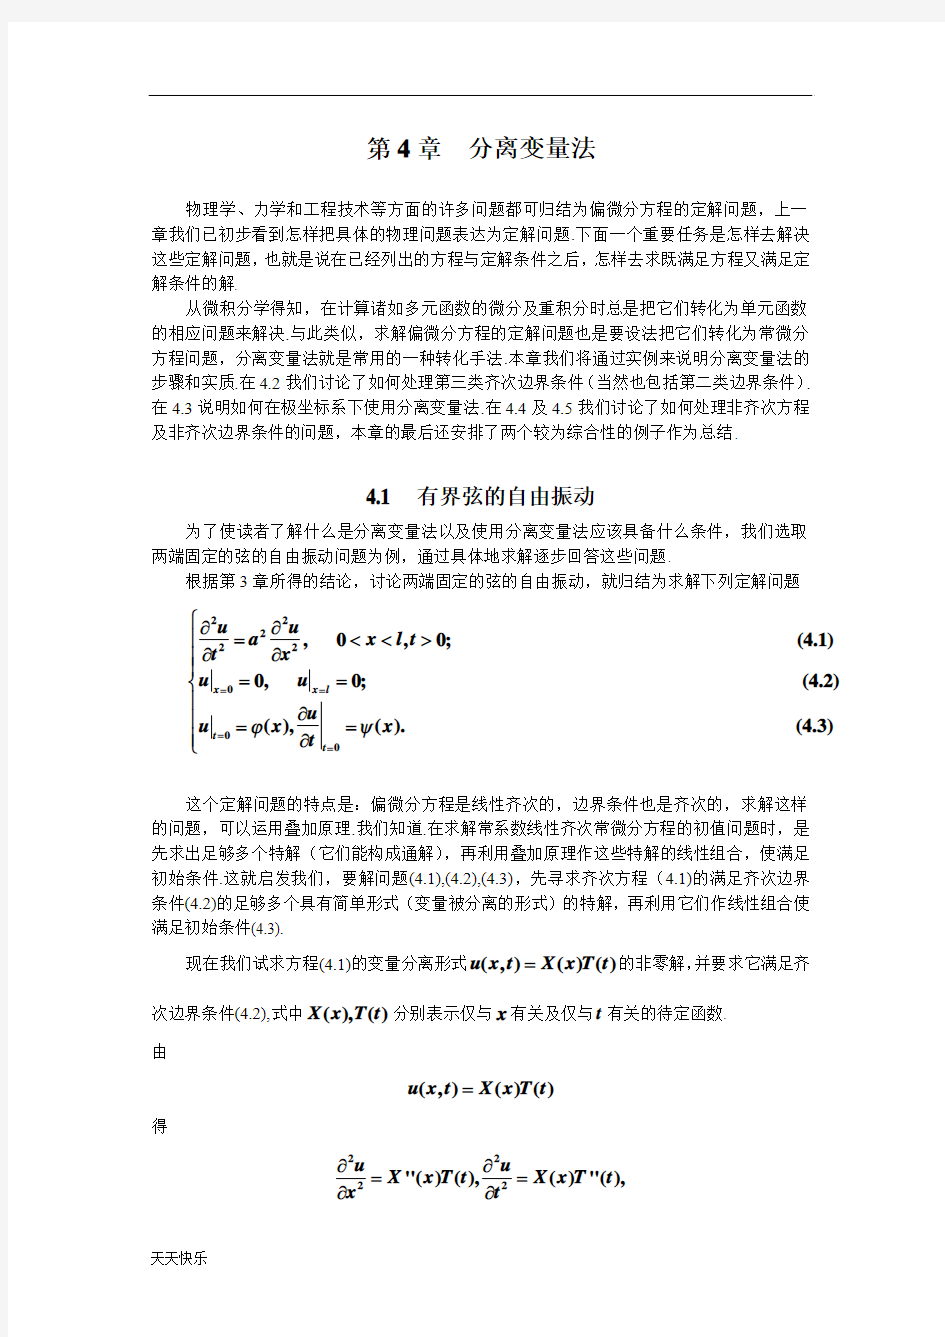 新版数学物理方程学习指导书第4章  分离变量法